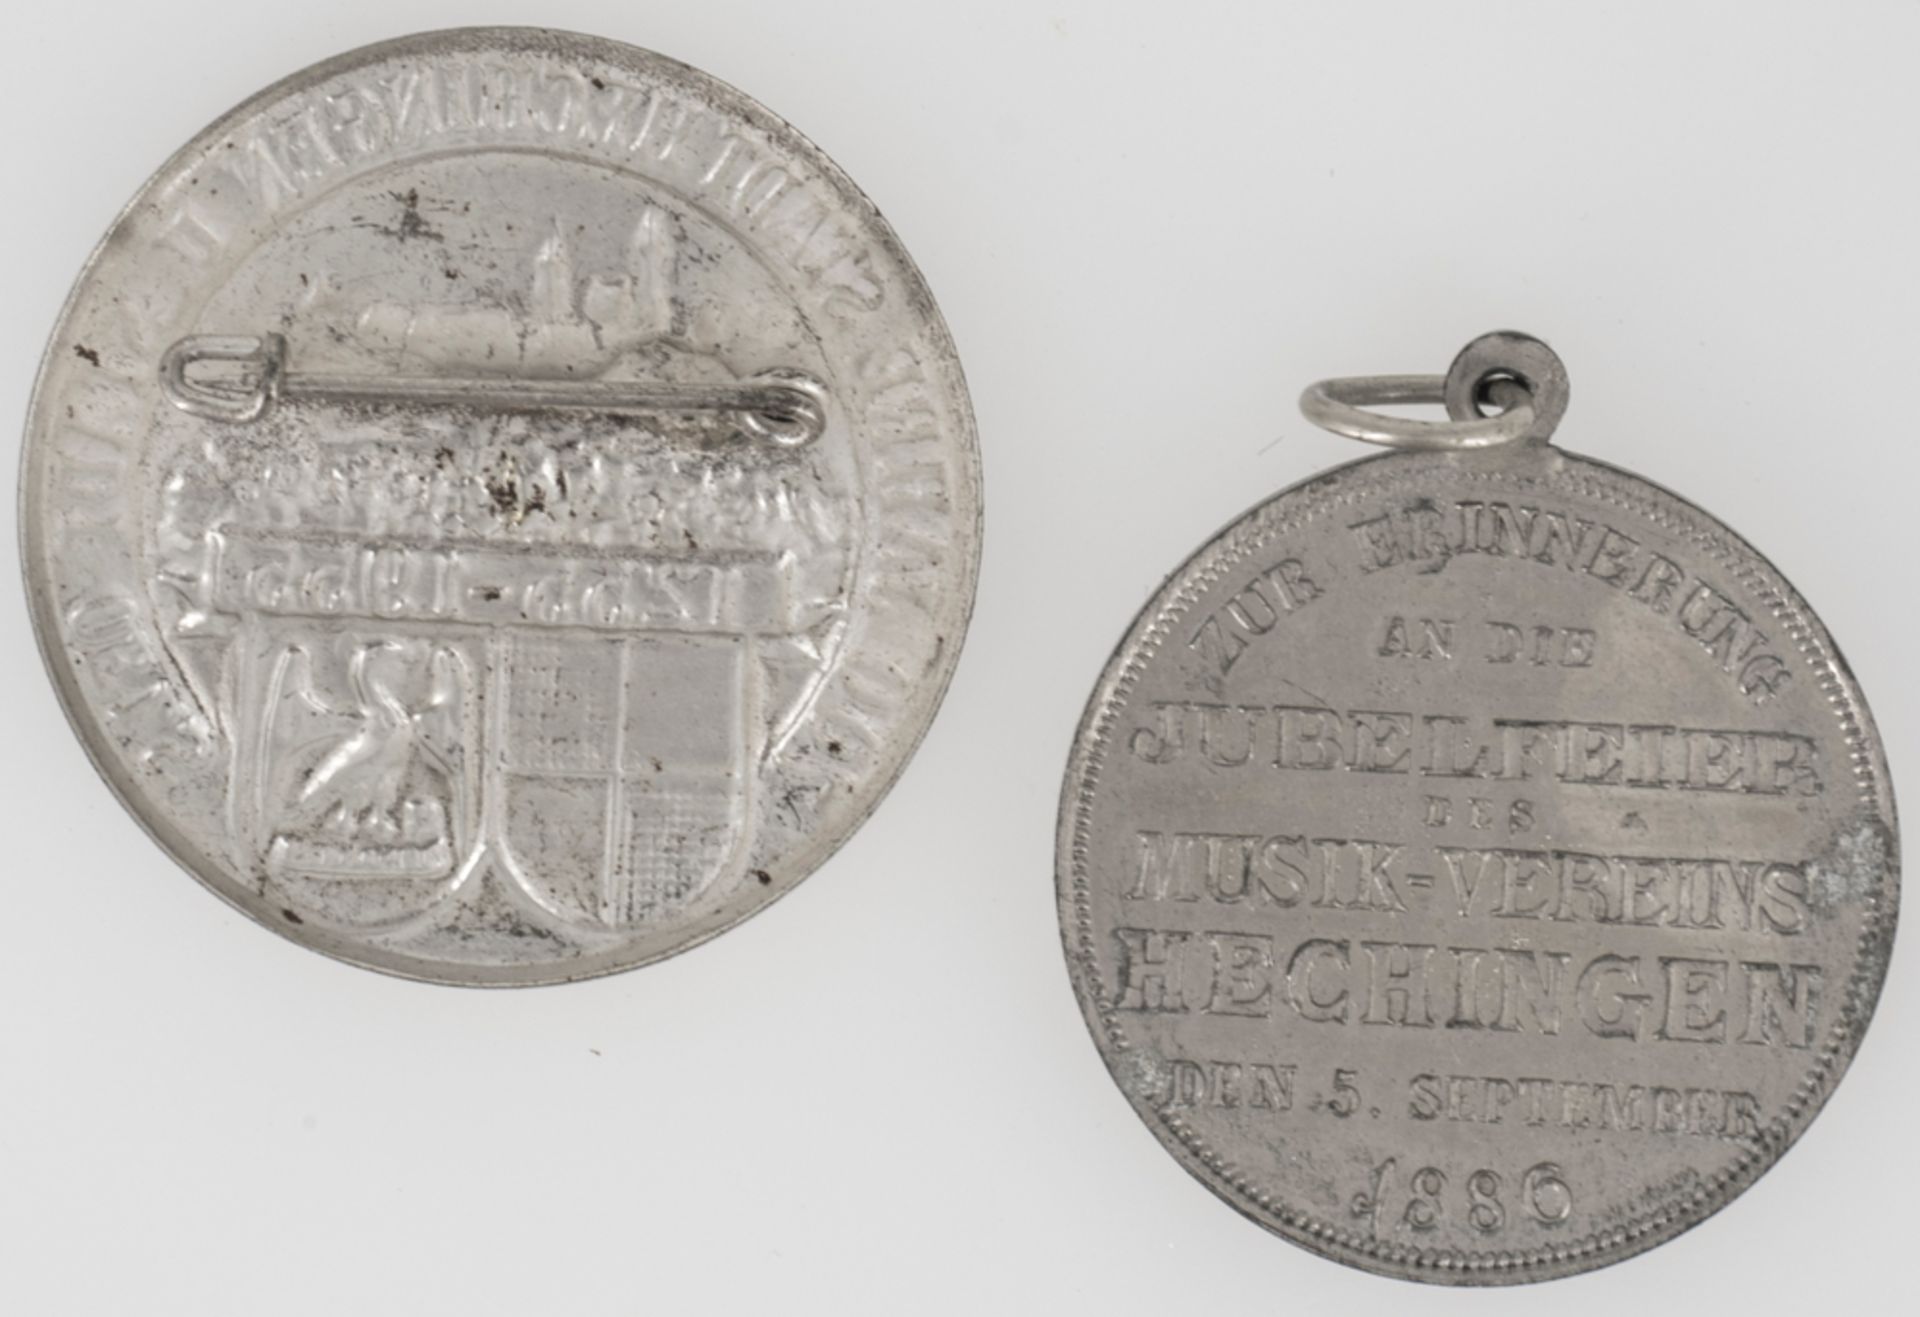 Tragbare Medaille "Zur Erinnerung an die Jubelfeier des Musikvereins Hechingen den 5. September - Image 2 of 2